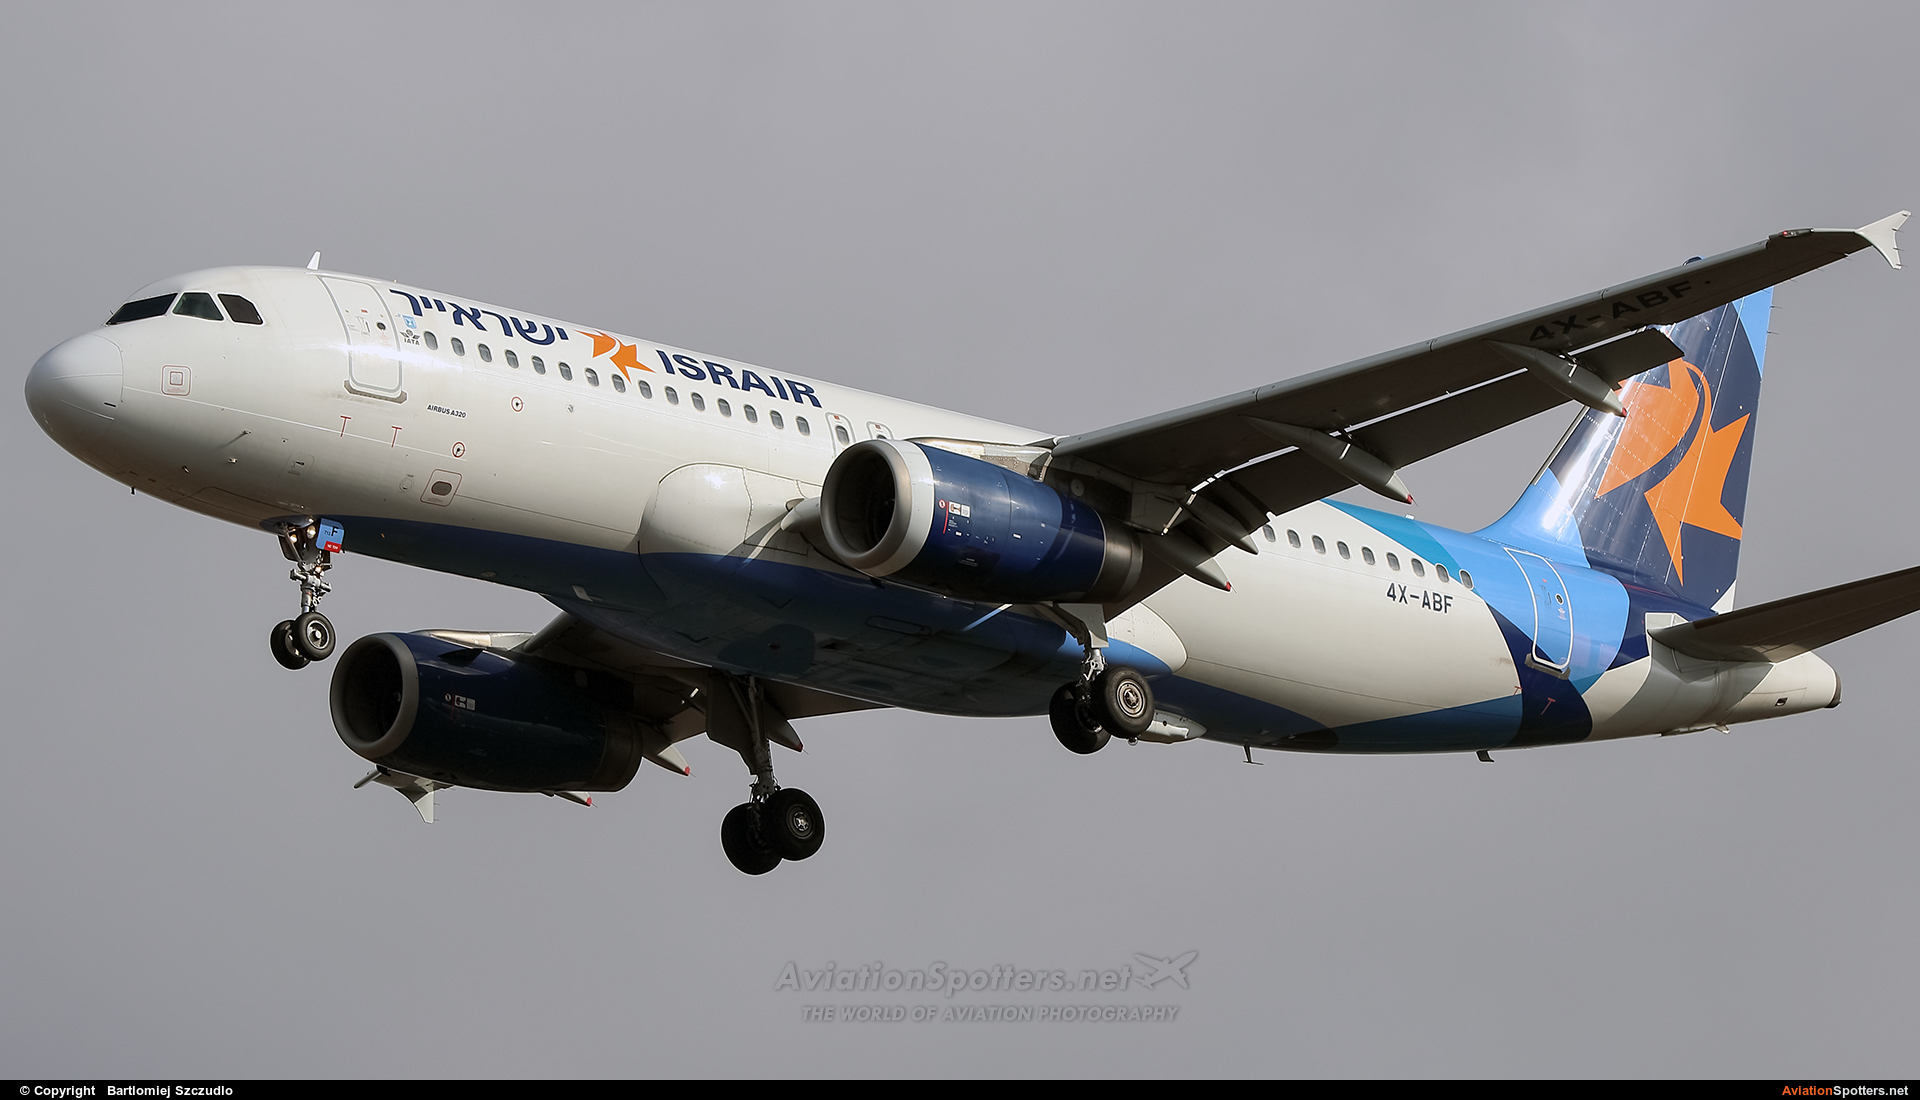 Israir Airlines  -  A320-232  (4X-ABF) By Bartlomiej Szczudlo  (BartekSzczudlo)